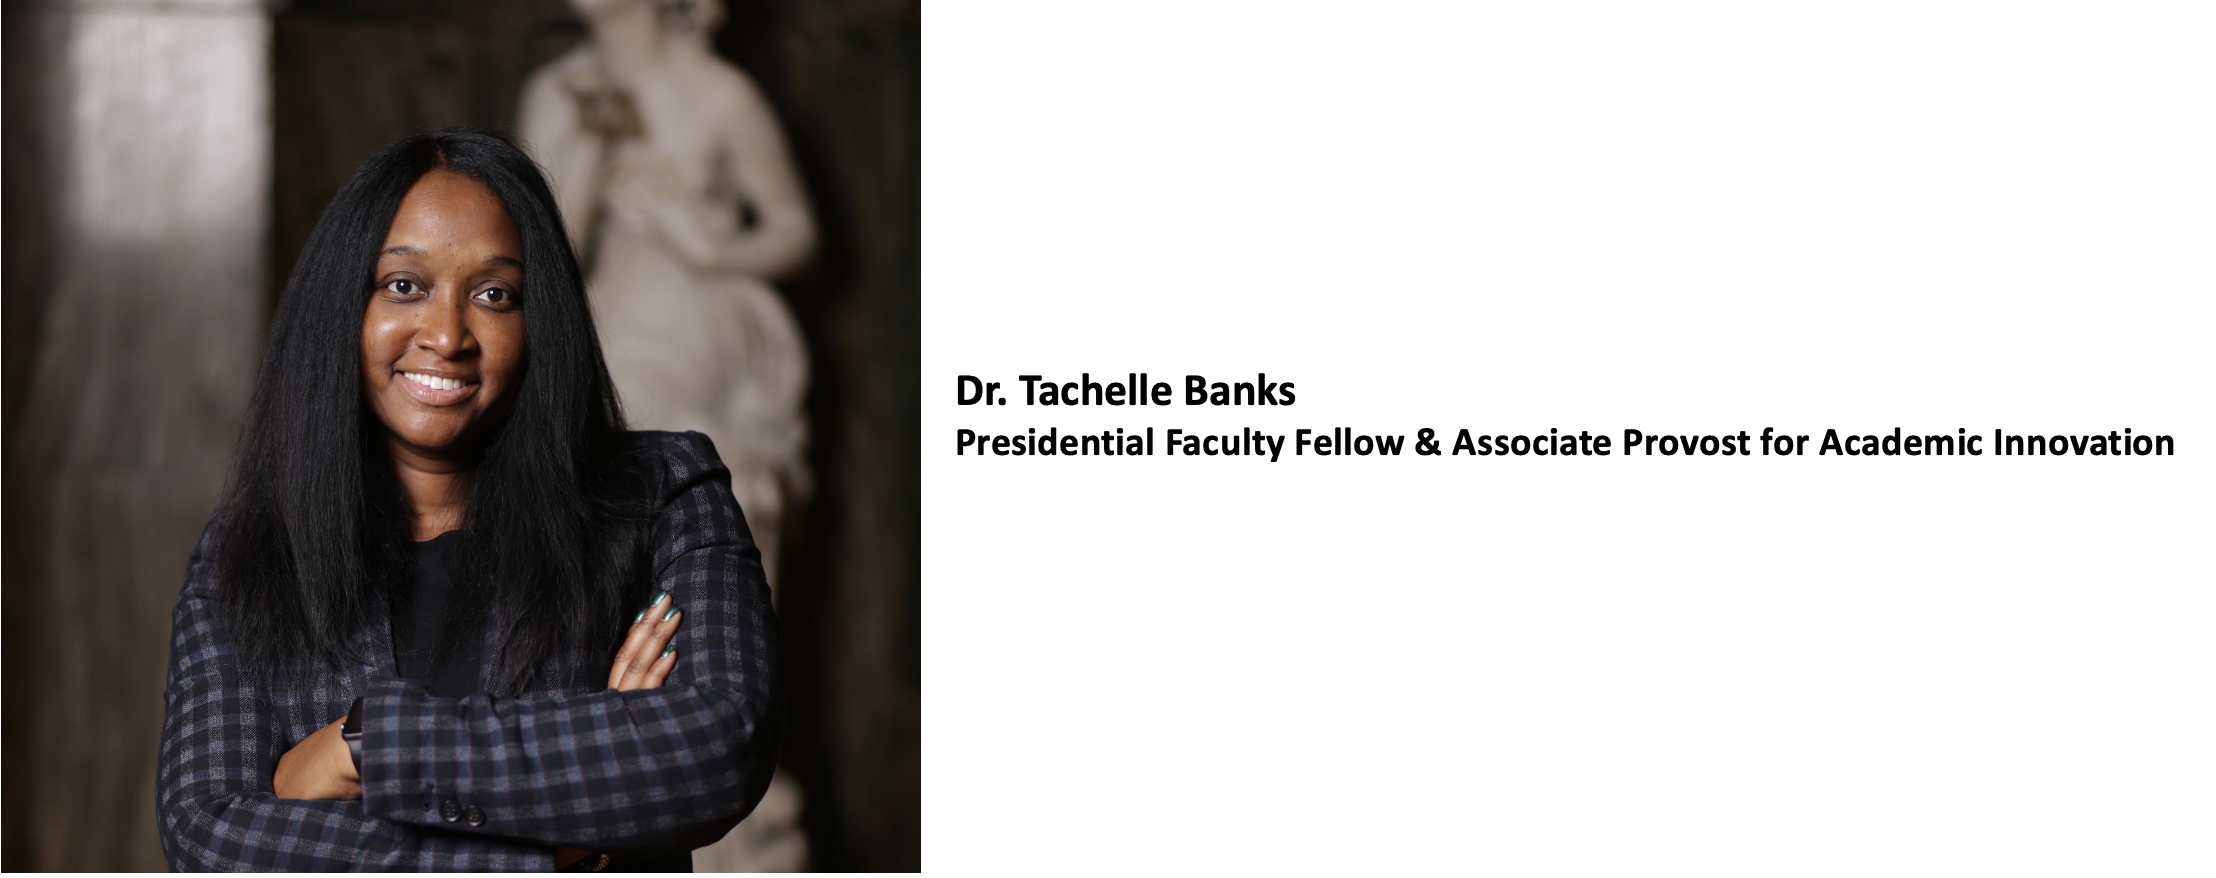 Dr. Tachelle Banks